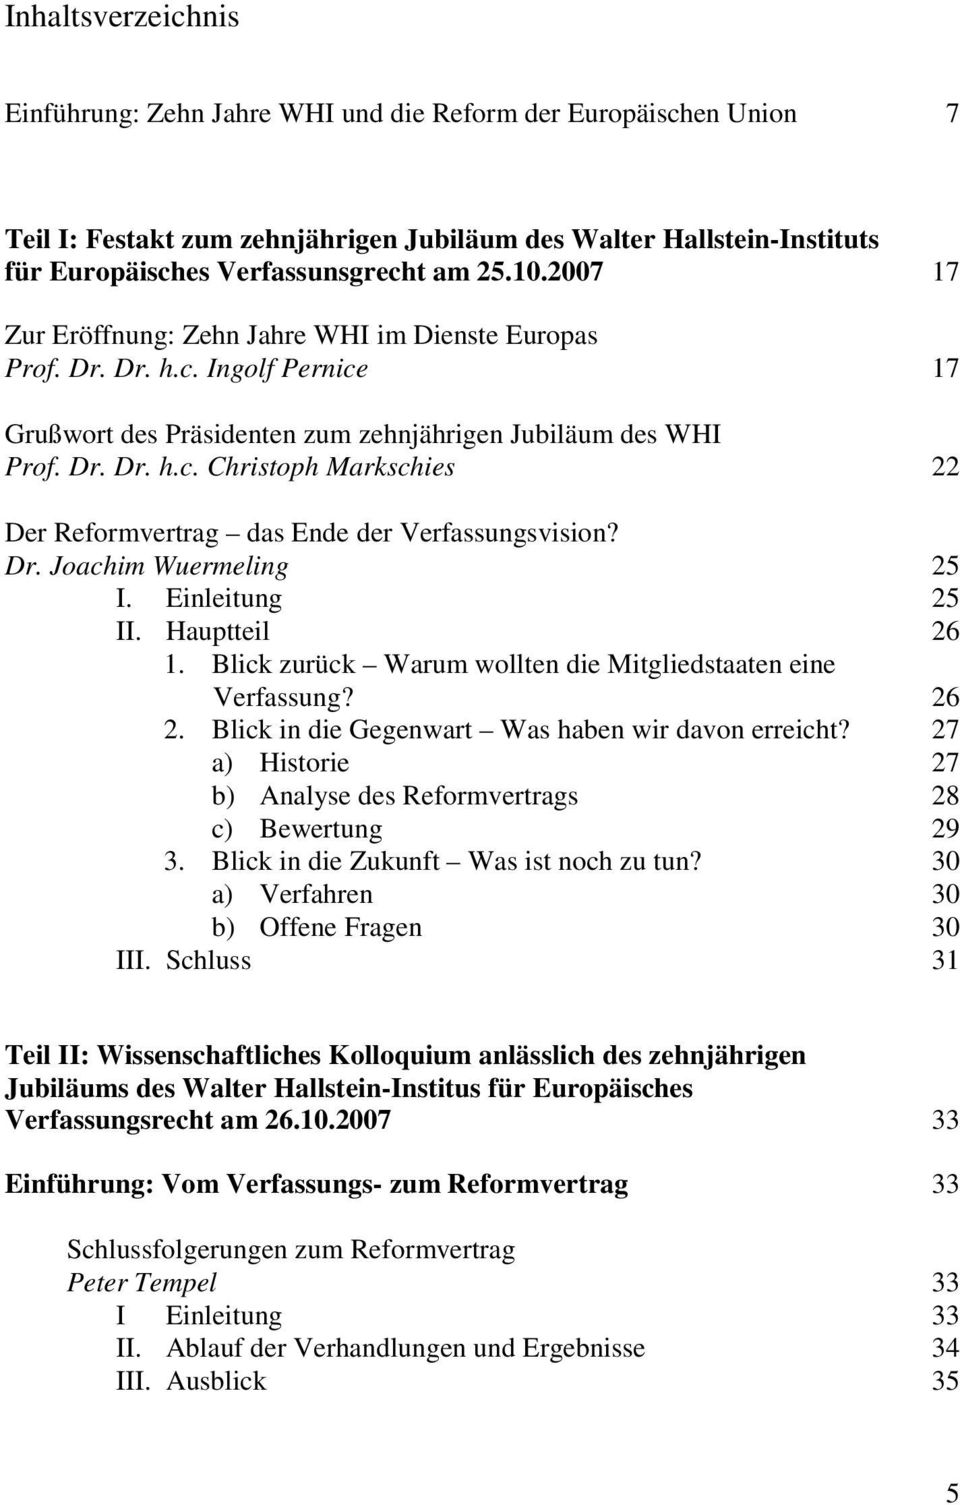 Dr. Joachim Wuermeling 25 I. Einleitung 25 II. Hauptteil 26 1. Blick zurück Warum wollten die Mitgliedstaaten eine Verfassung? 26 2. Blick in die Gegenwart Was haben wir davon erreicht?